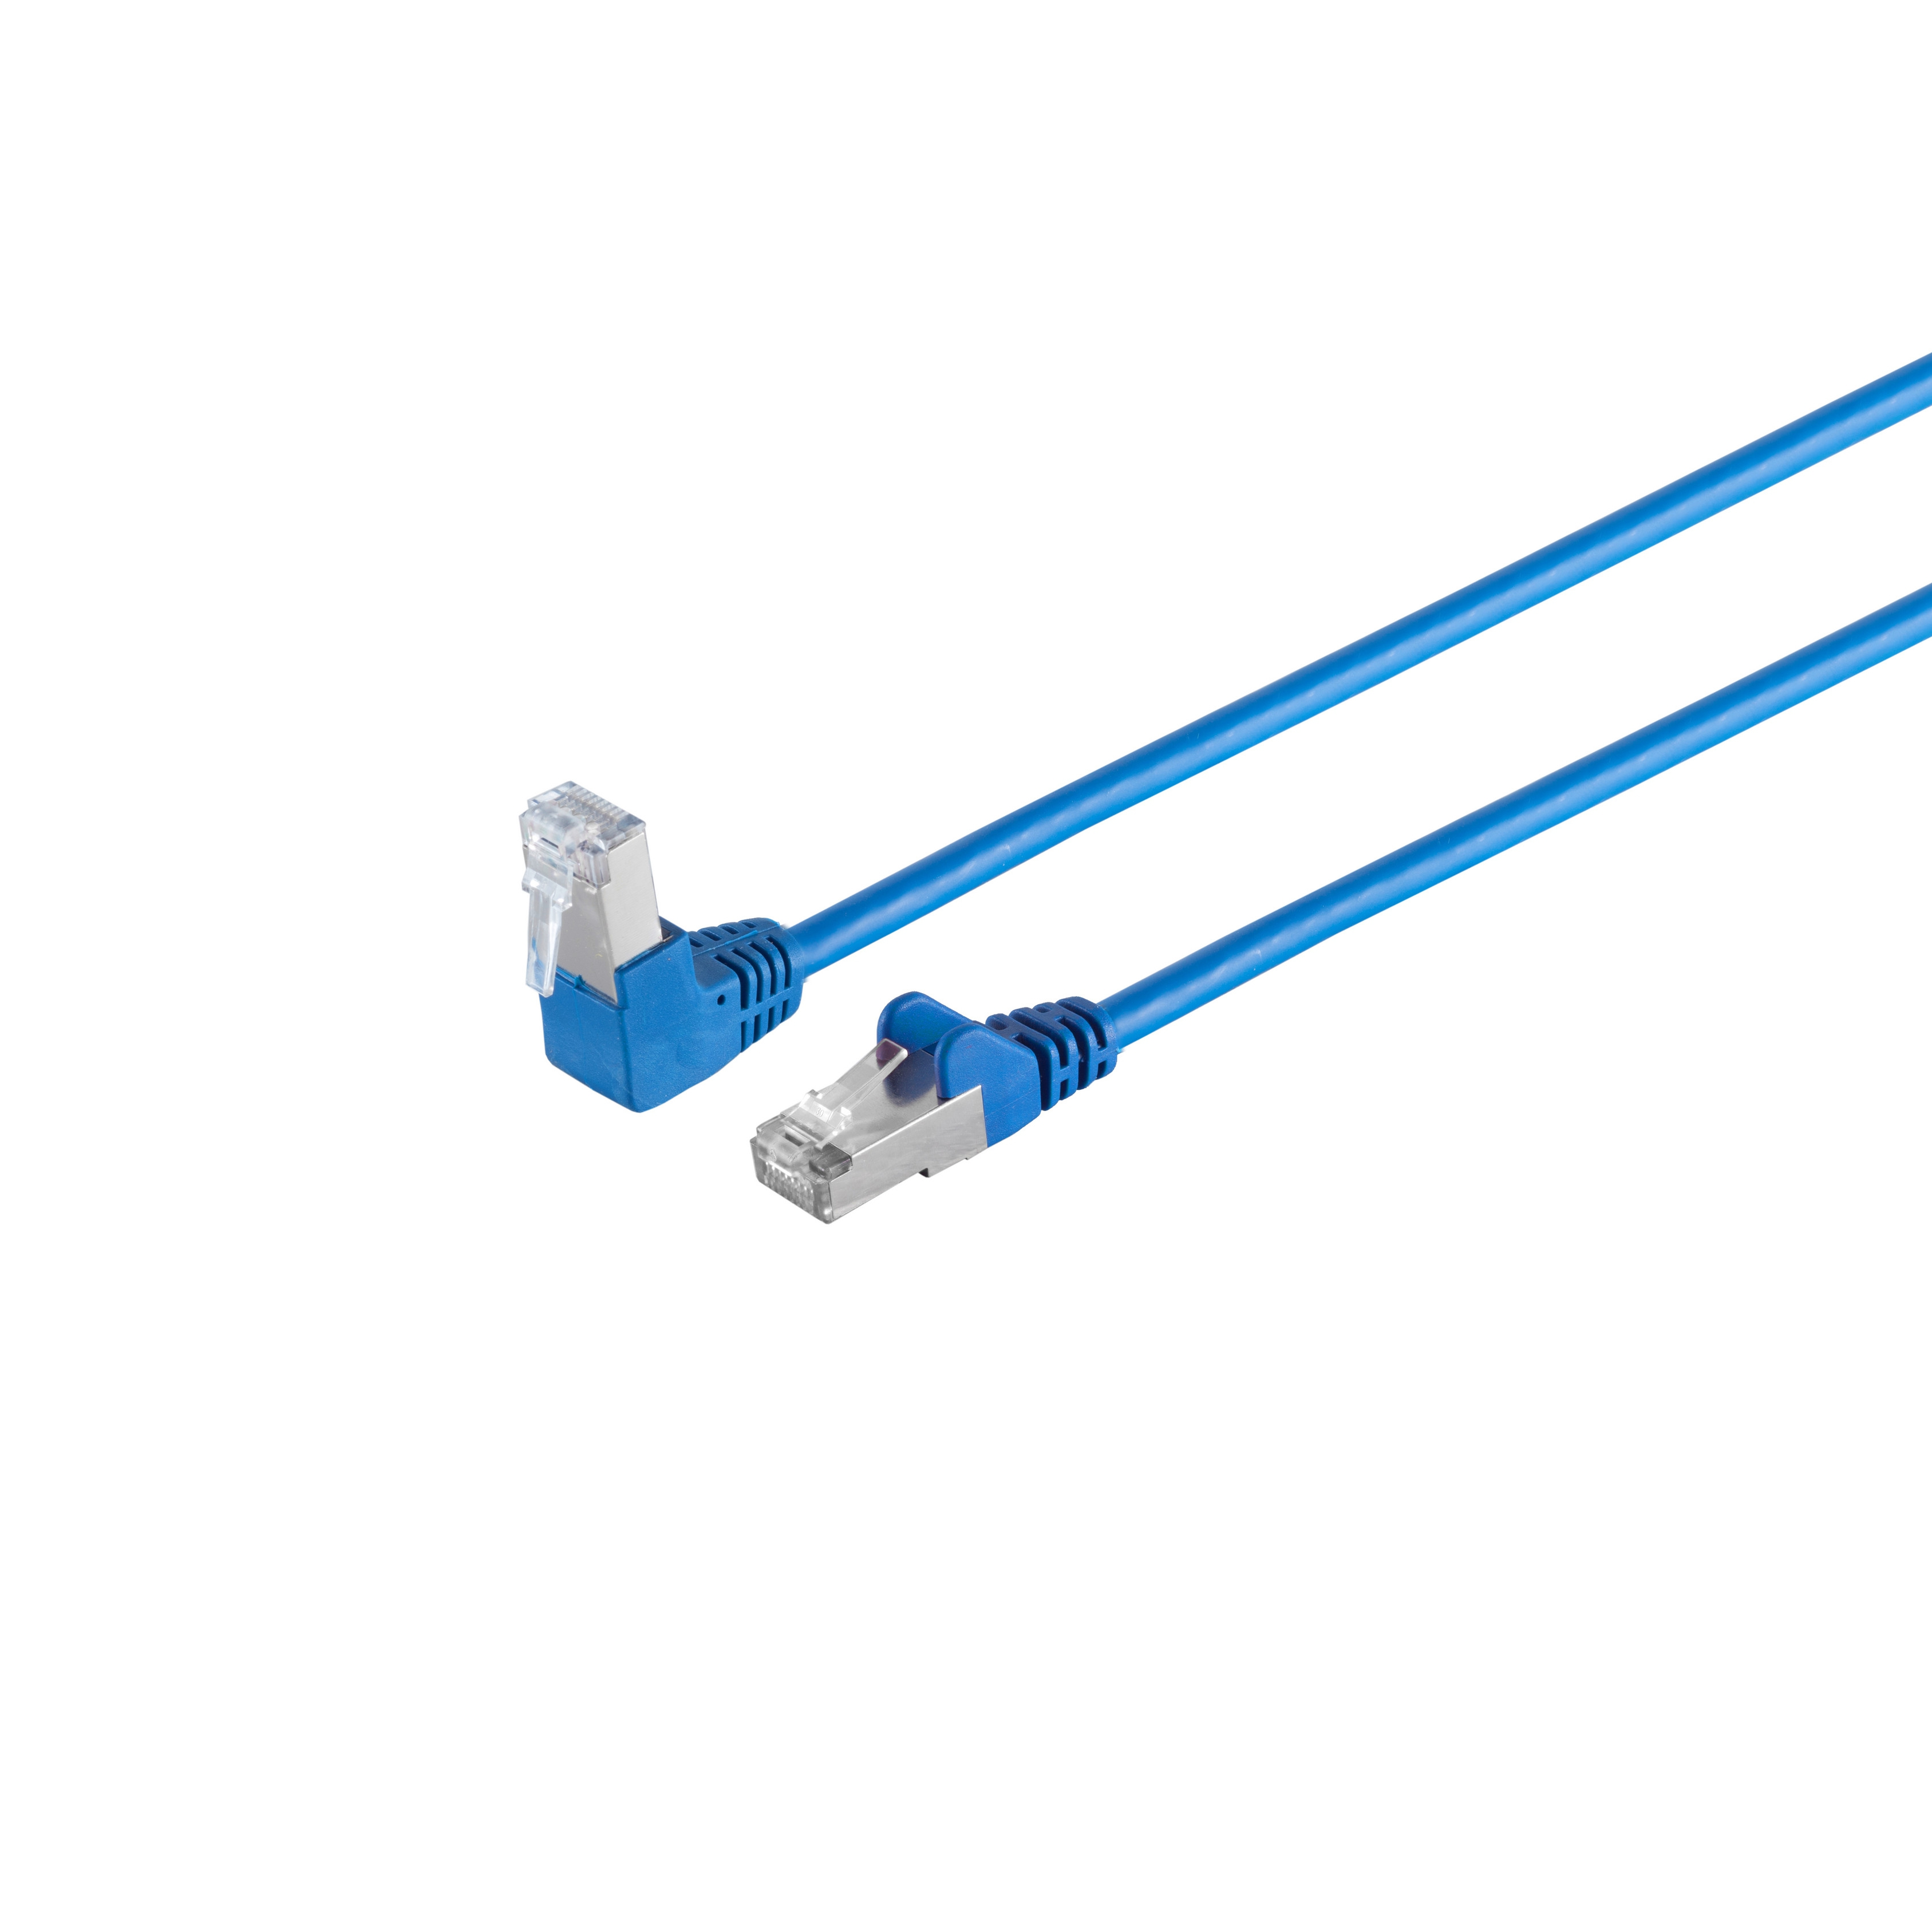 Kabel PIMF RJ45, S/CONN MAXIMUM 6 CONNECTIVITY cat blau 7,5m, 7,50 S/FTP m Patchkabel Winkel-gerade